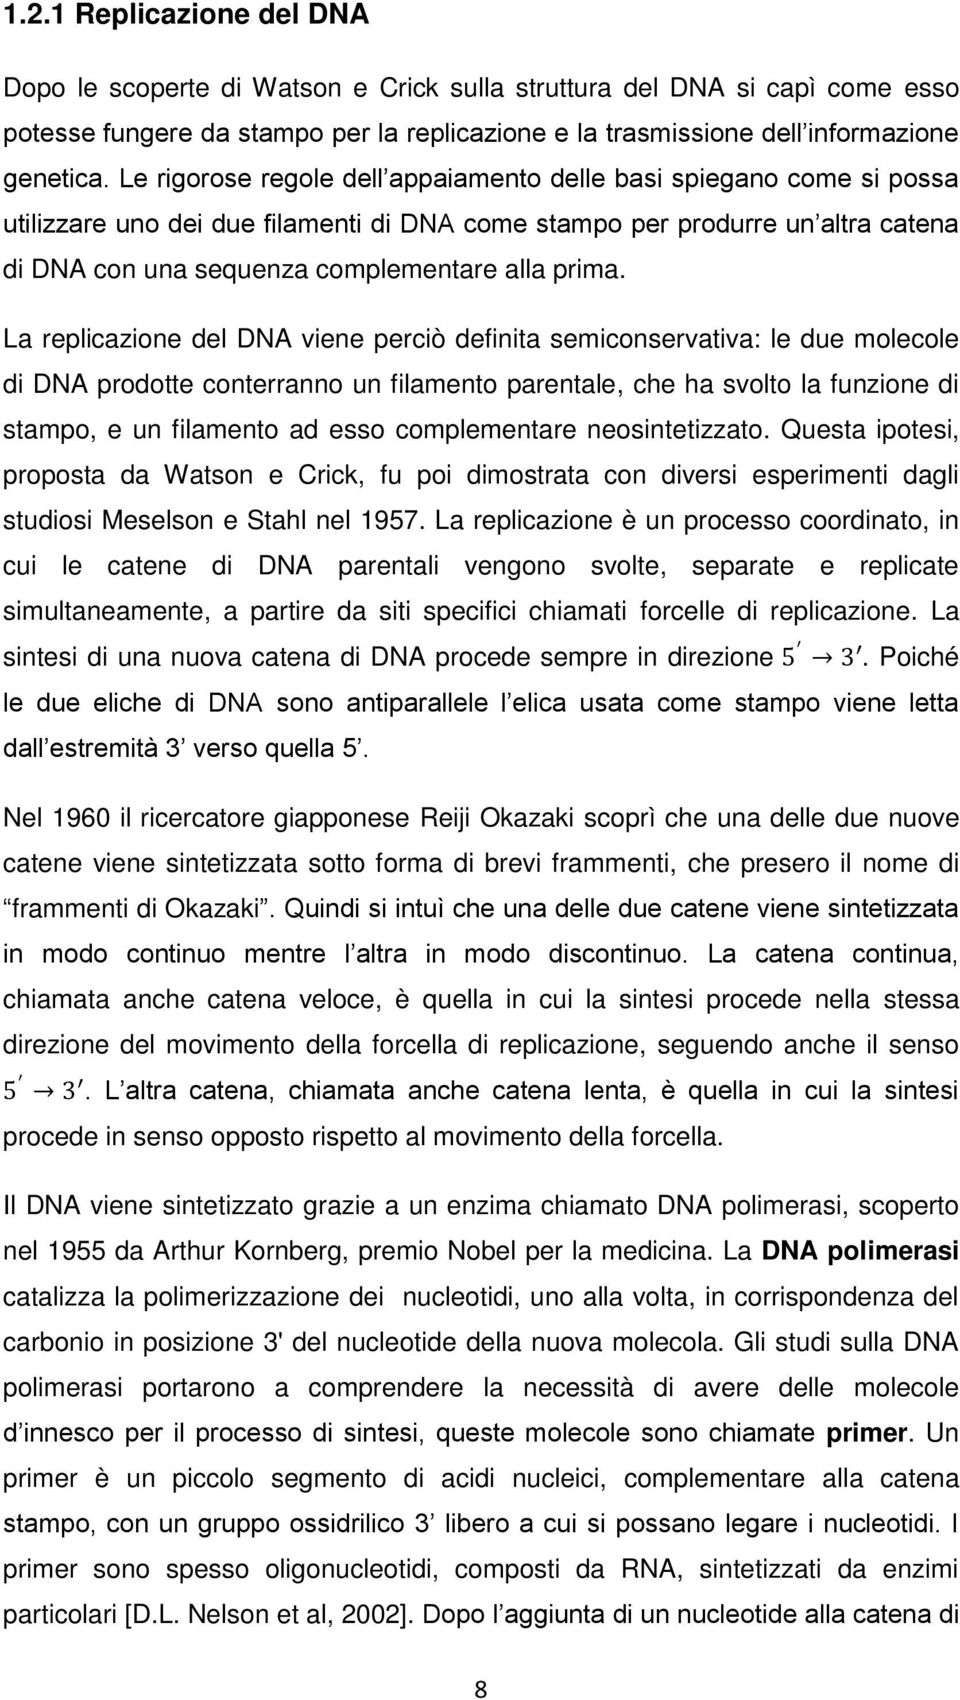 La replicazione del DNA viene perciò definita semiconservativa: le due molecole di DNA prodotte conterranno un filamento parentale, che ha svolto la funzione di stampo, e un filamento ad esso